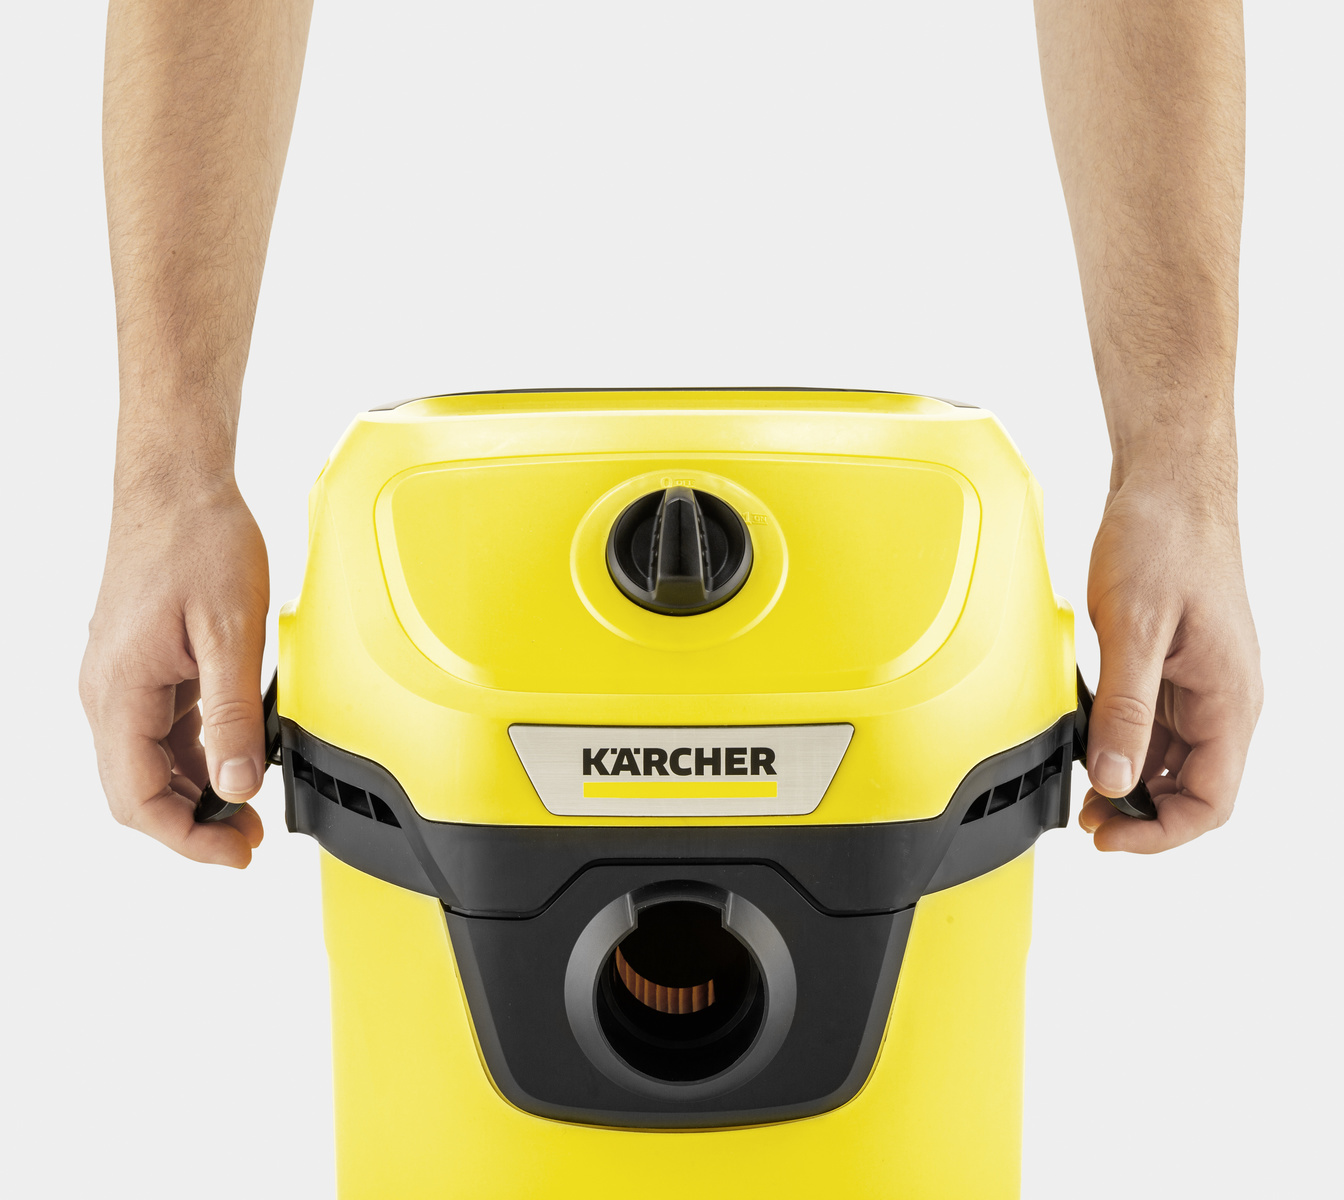 Karcher Distribuidor Coyoacán - Aspiradora Karcher WD3 Tu aliado en la  limpieza del hogar. La WD 3 es ideal para la limpieza ocasional del  interior del hogar, sótano, área exterior, así como